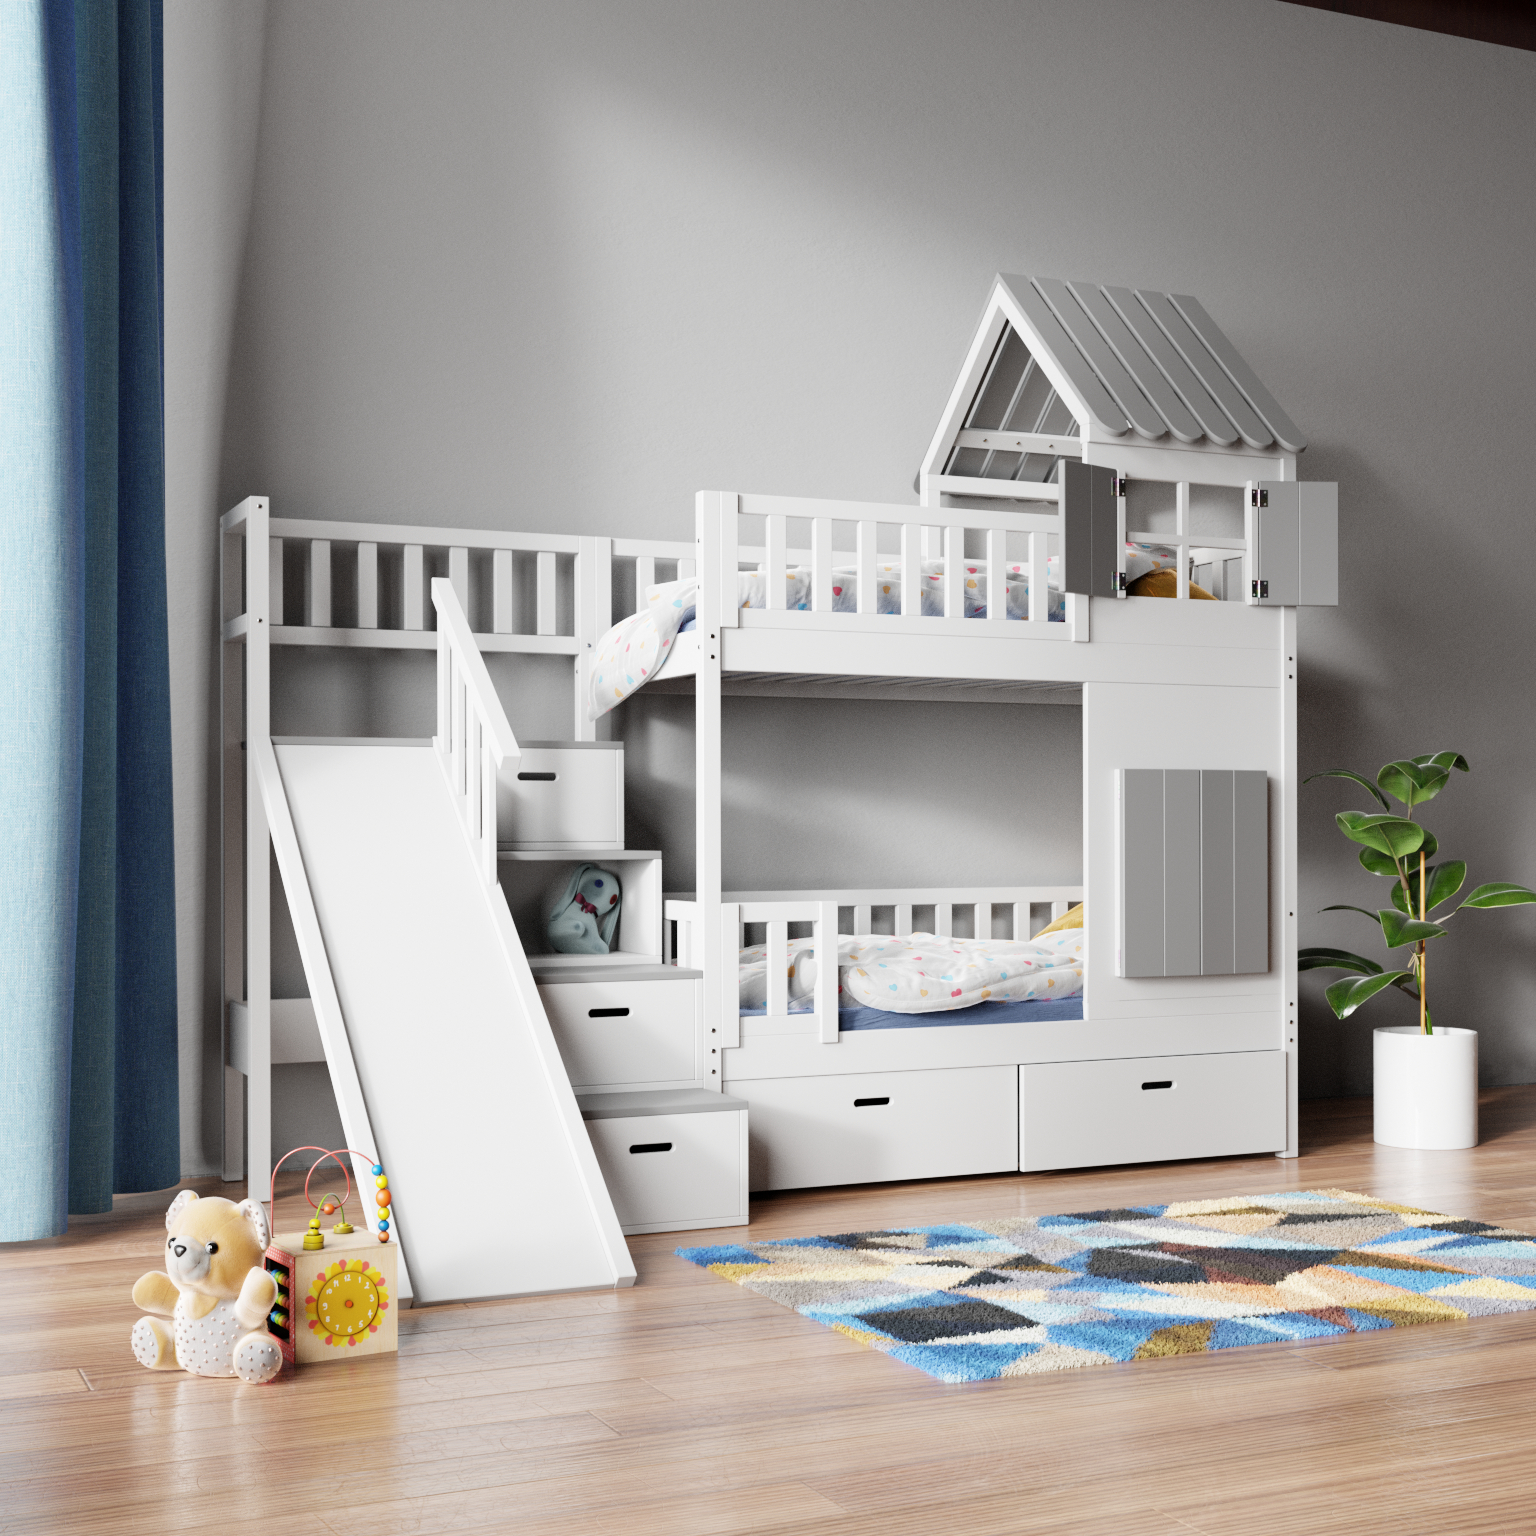 Die besten Etagenbett Ideen für Kinderzimmer